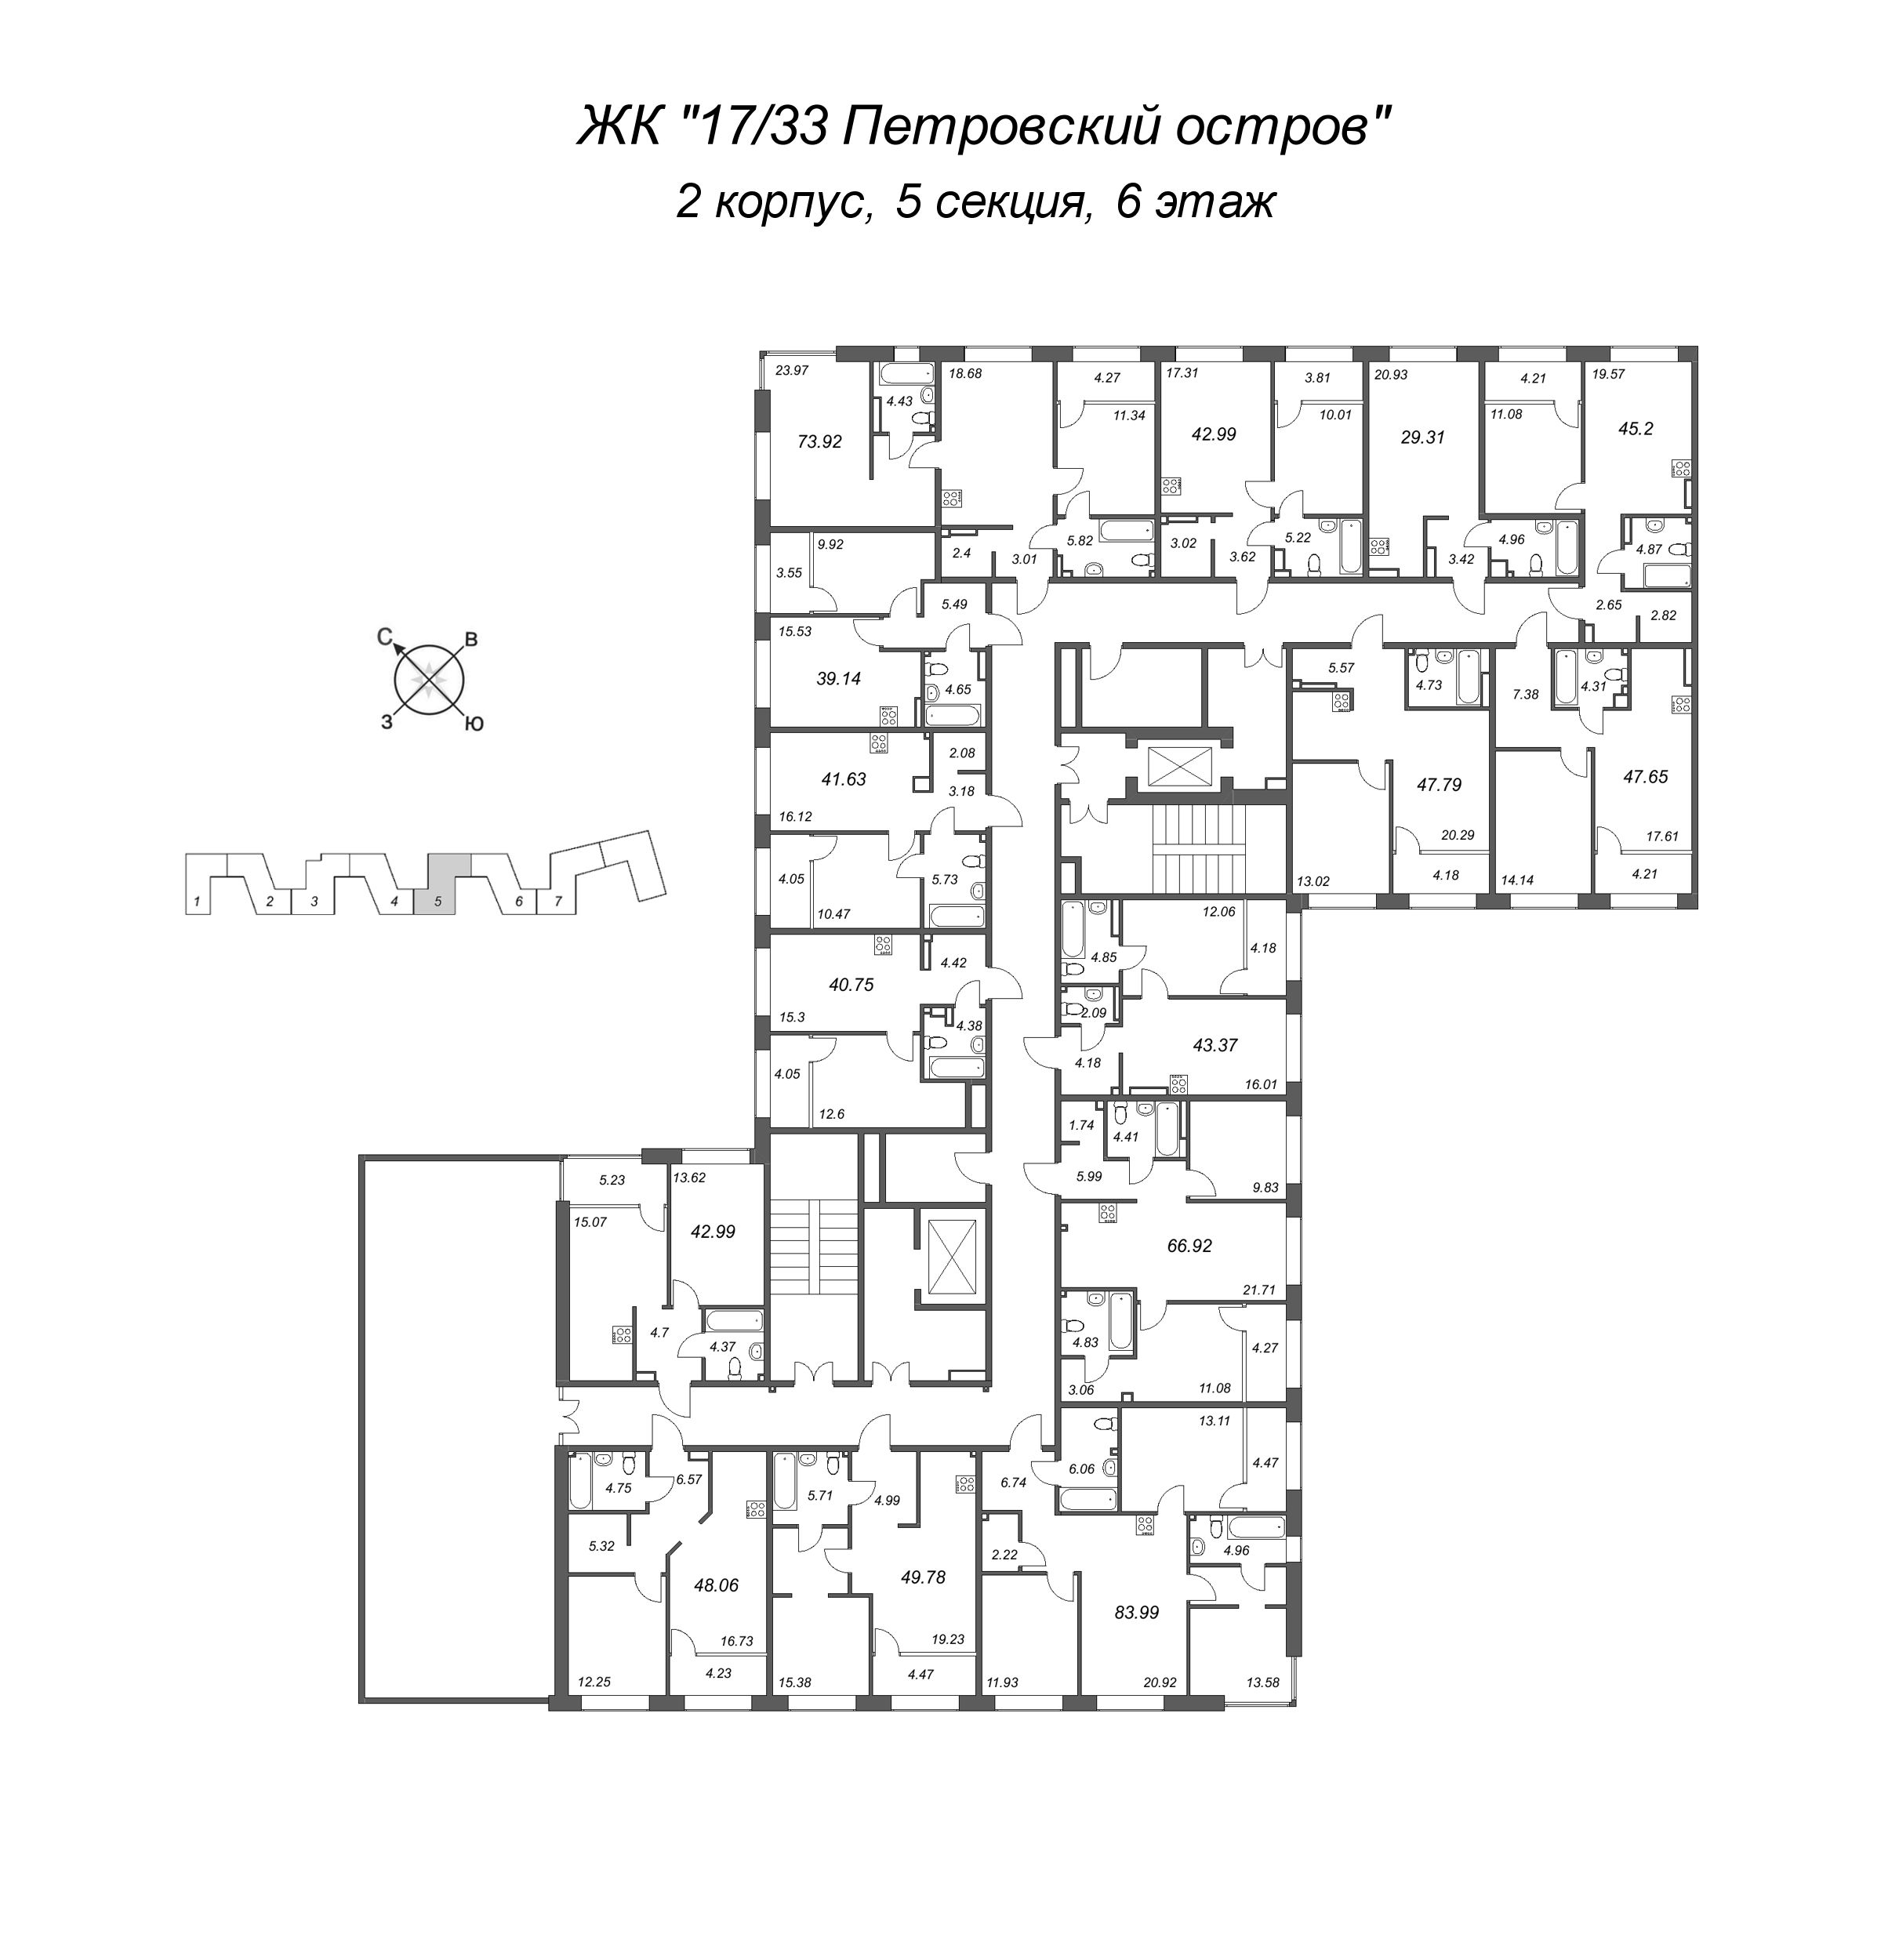 2-комнатная (Евро) квартира, 41.63 м² в ЖК "17/33 Петровский остров" - планировка этажа